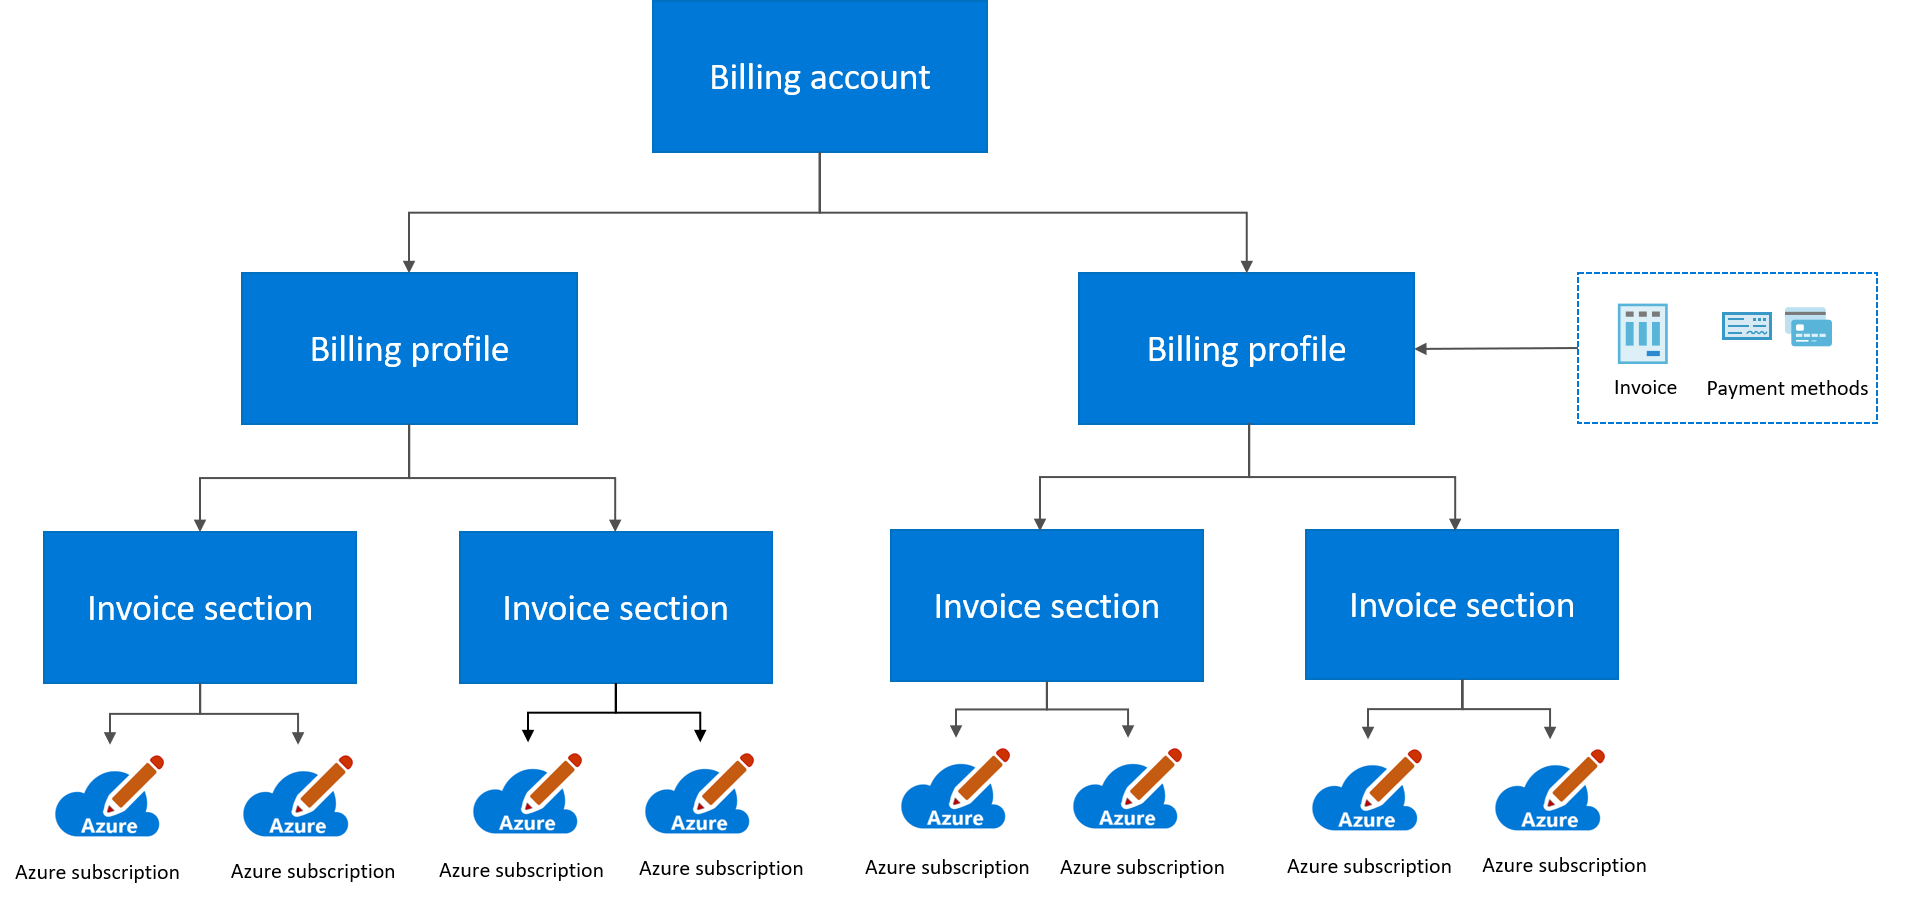 Diagrama mostrando a hierarquia de cobrança do Contrato de Cliente da Microsoft.